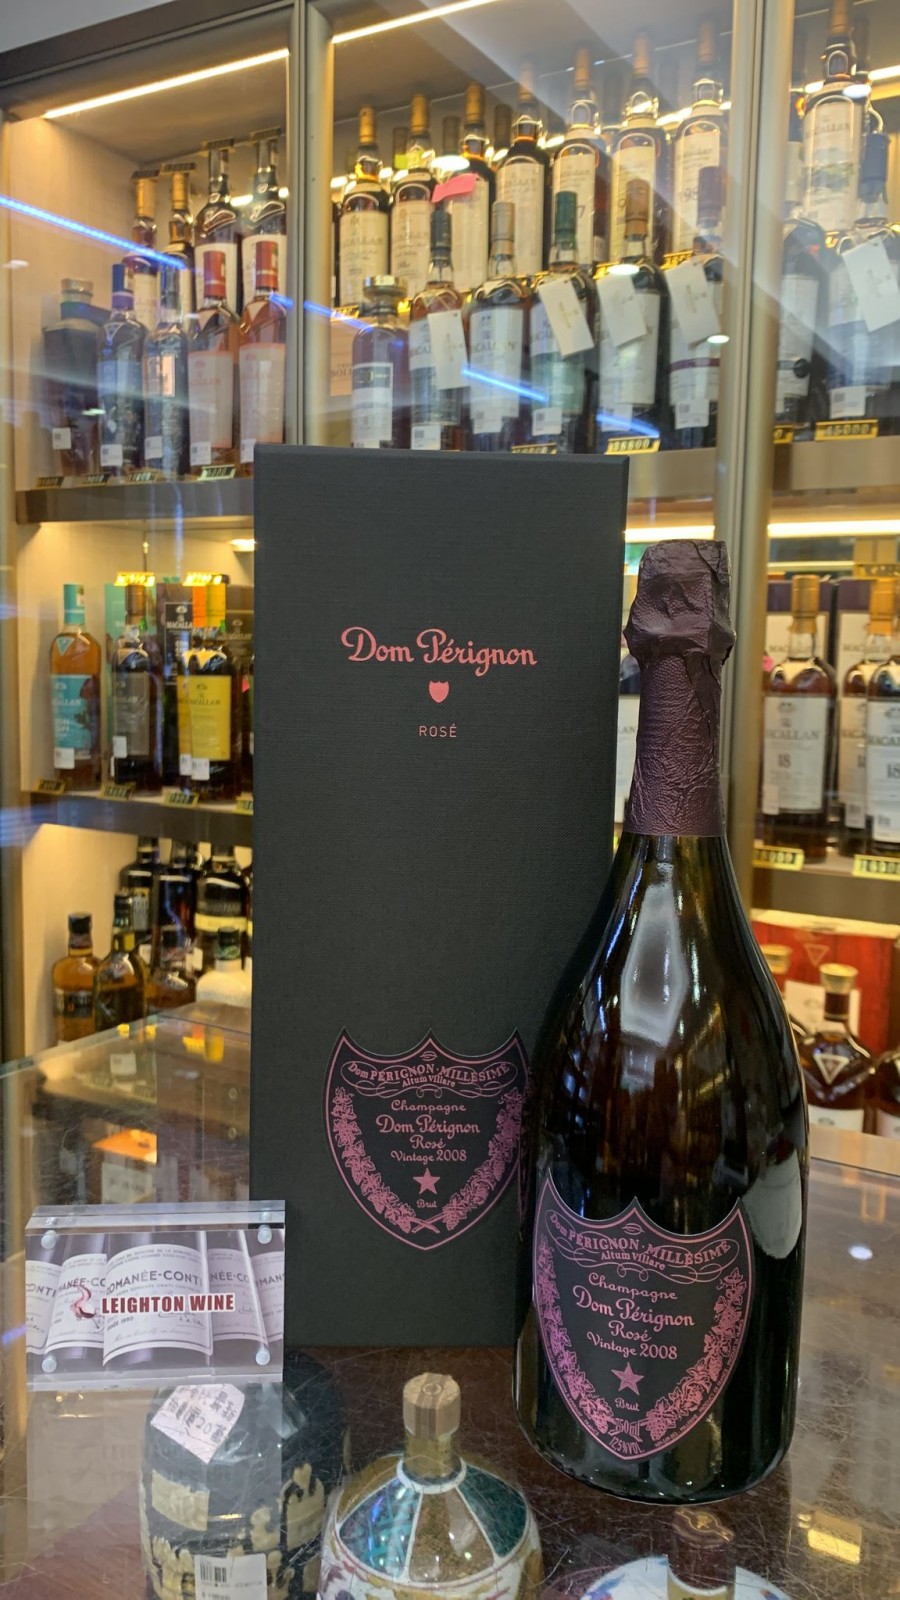 Dom Perignon Brut Rose Champagne 2008